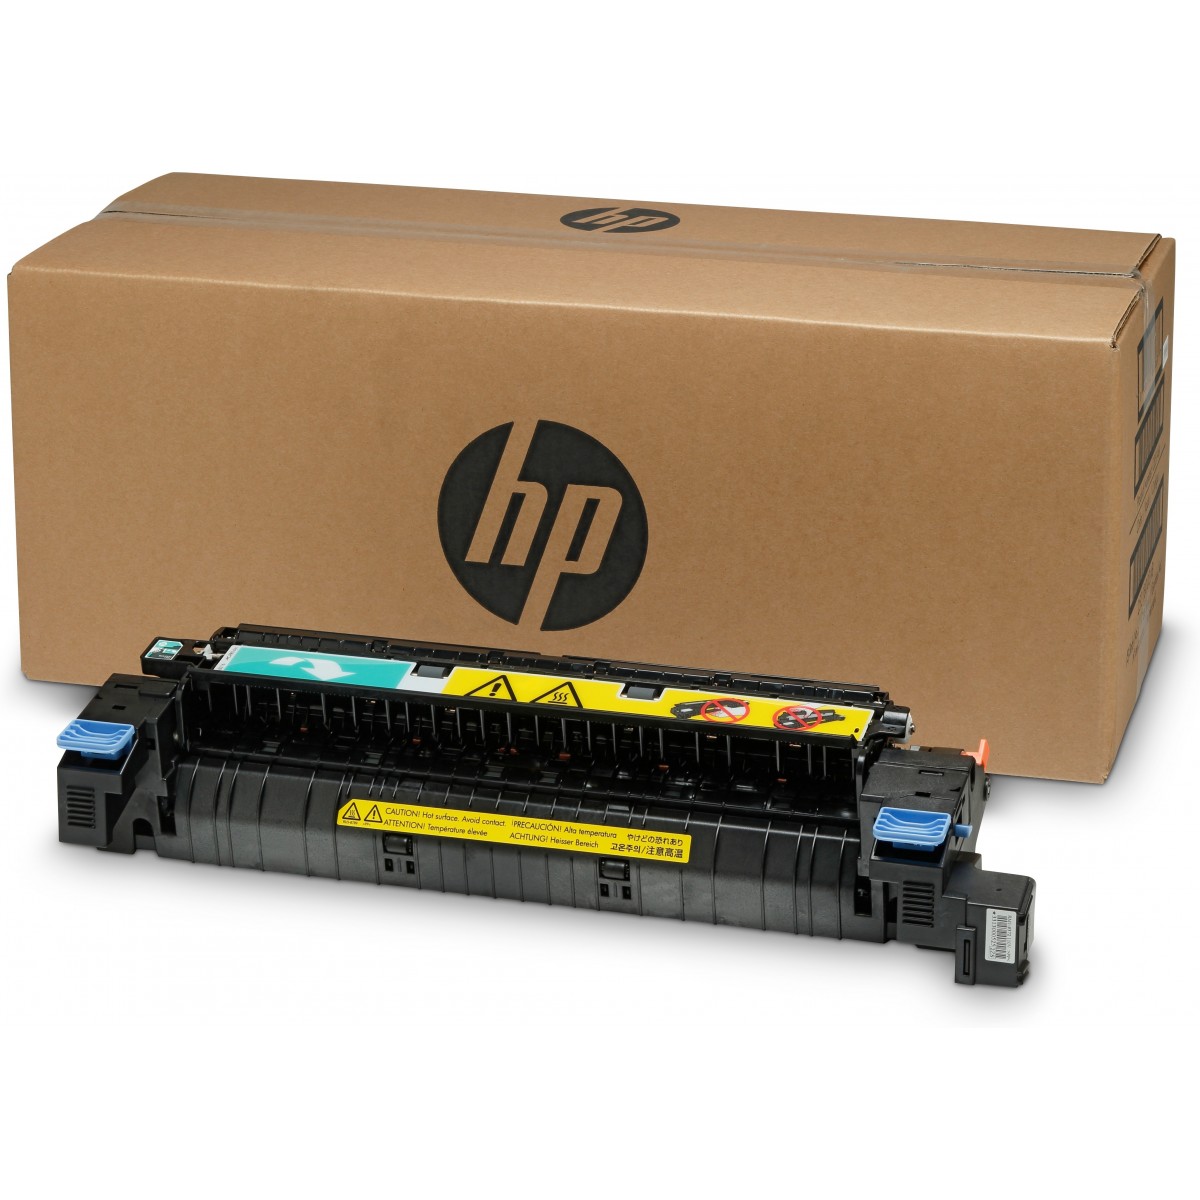 HP LaserJet (220 V) - Fuser